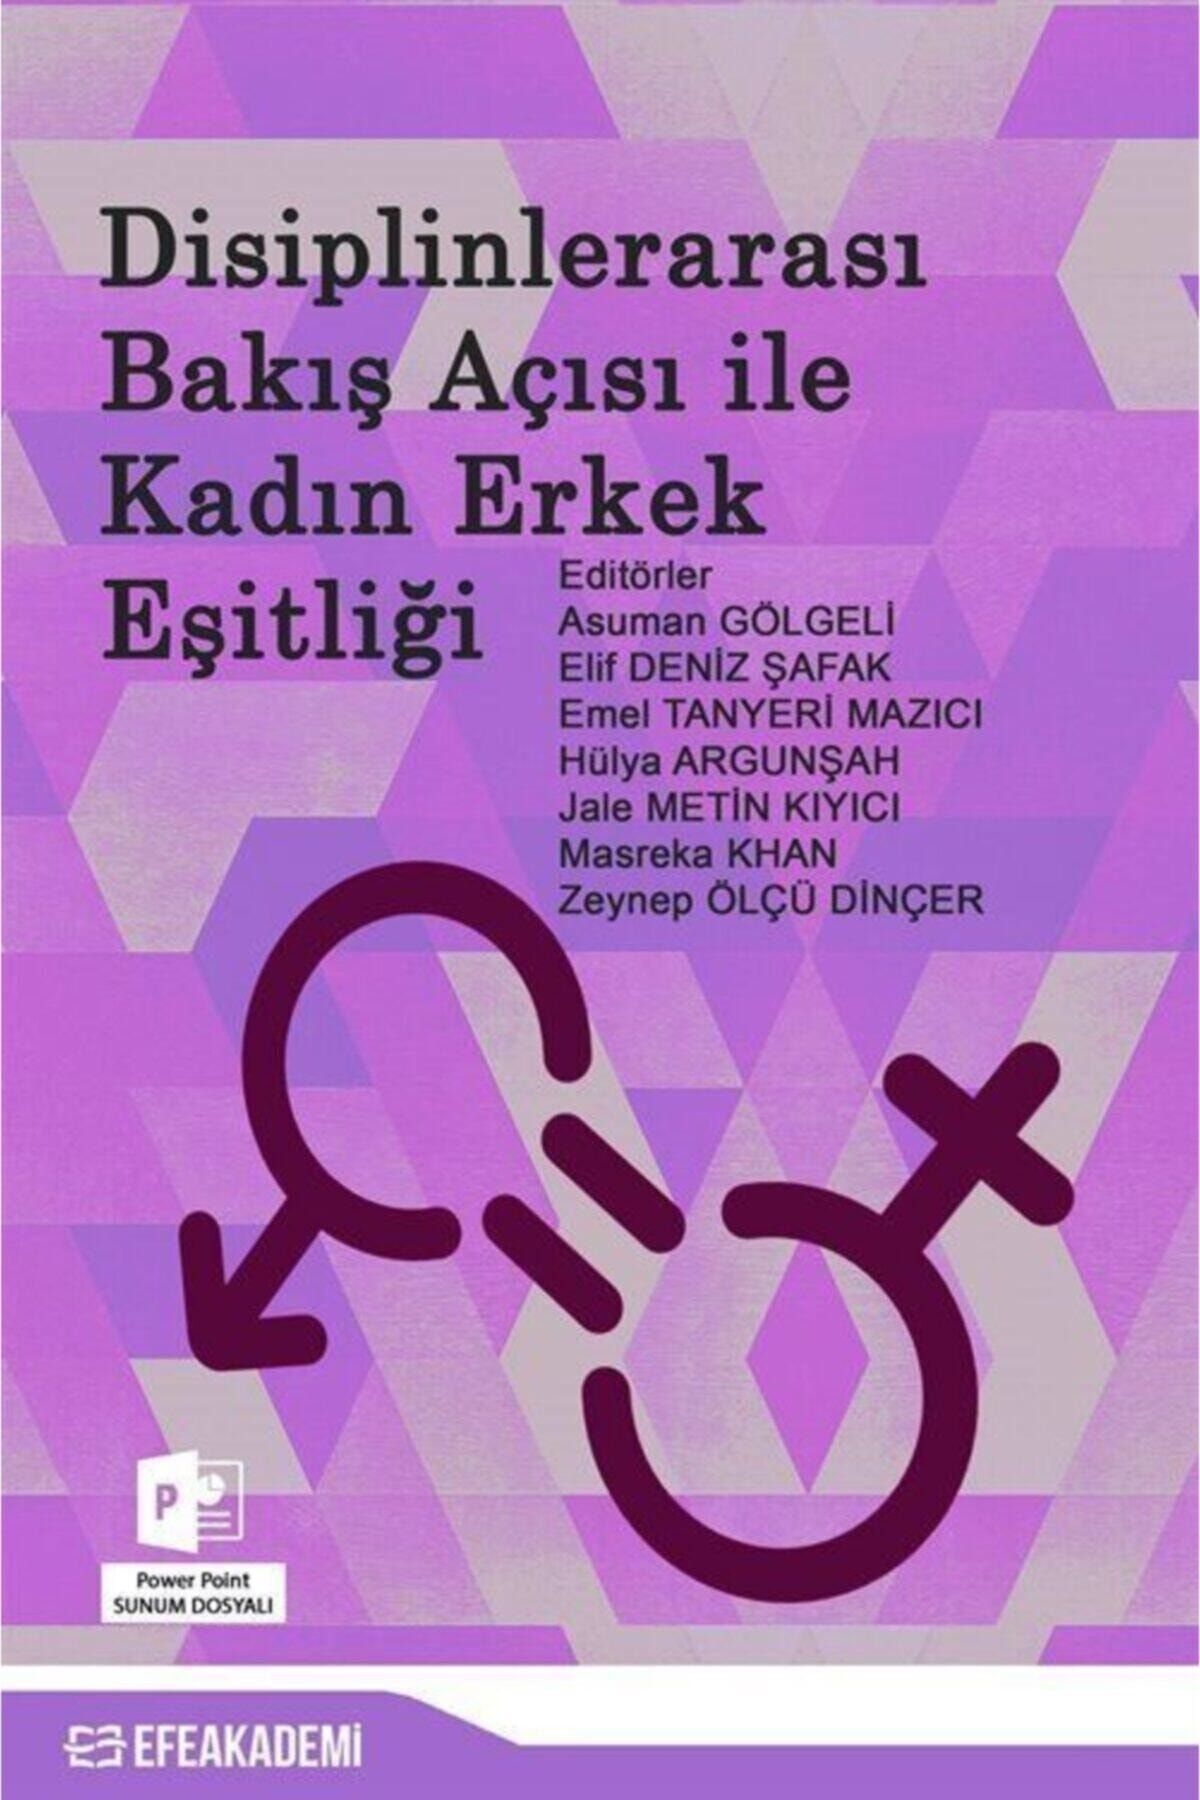 Efe Akademi Yayınları Disiplinlerarası Bakış Açısı Ile Kadın Erkek Eşitliği